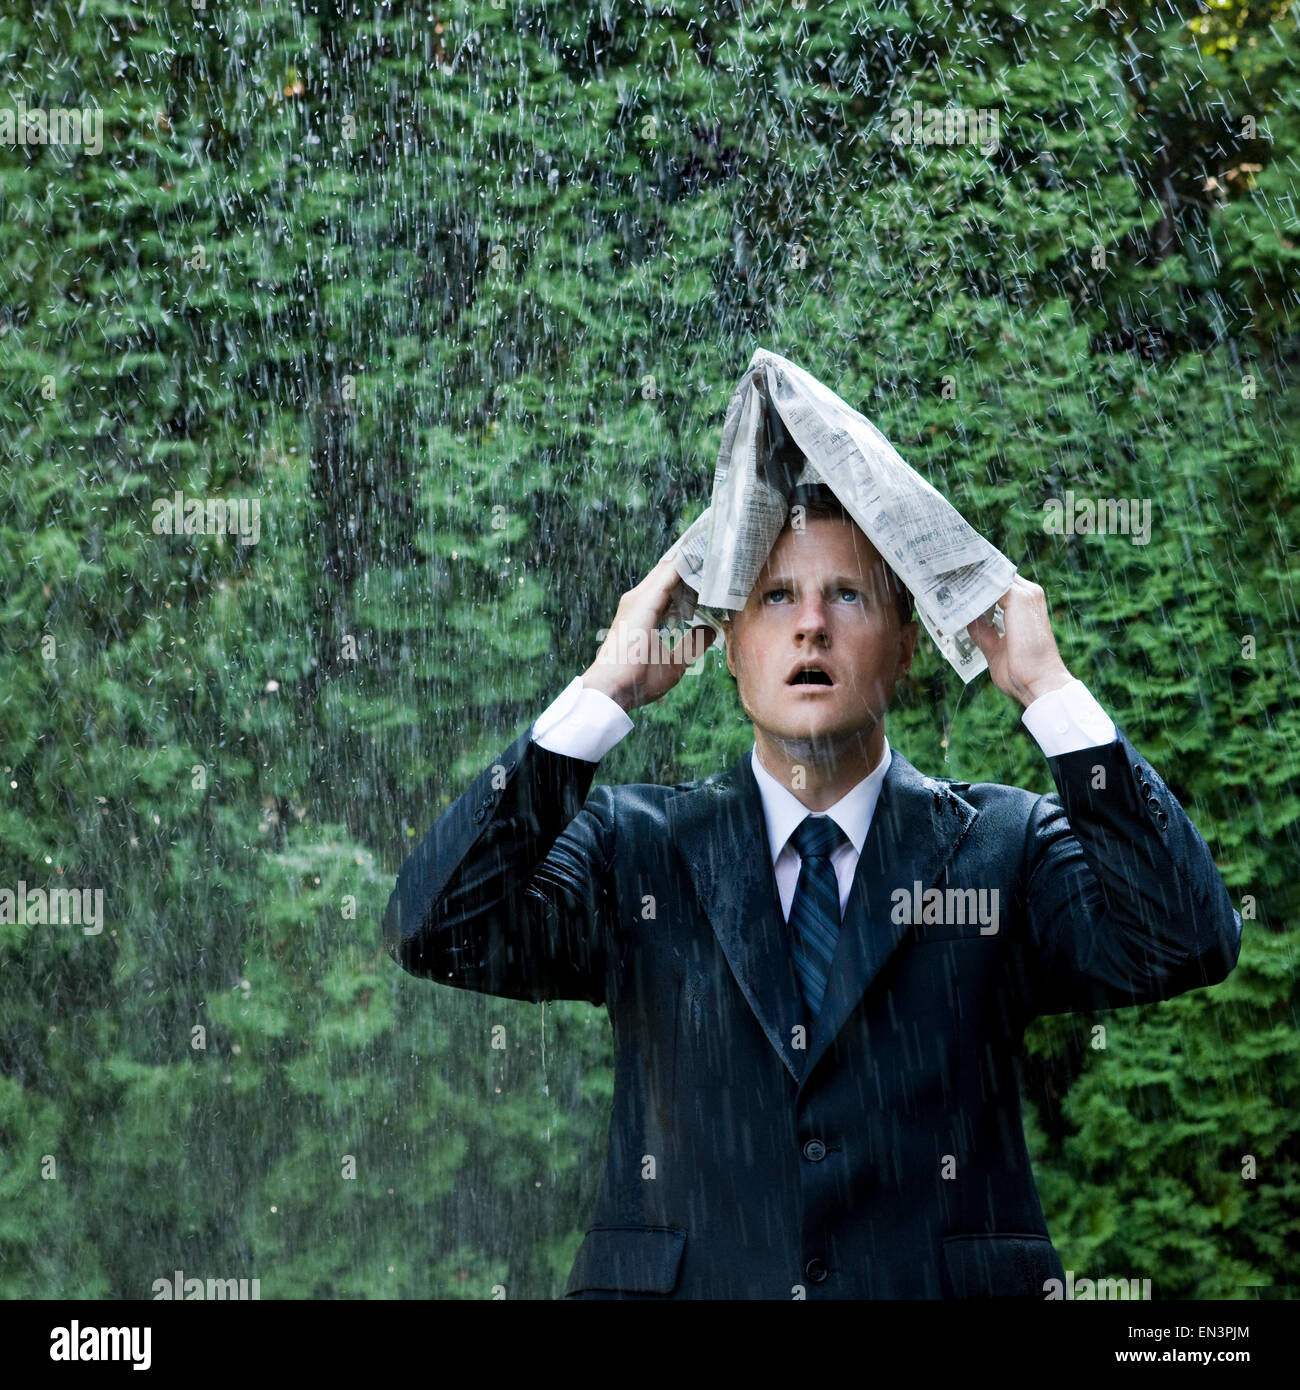 Mann in einem Anzug steht neben einem sprinkler Stockfoto